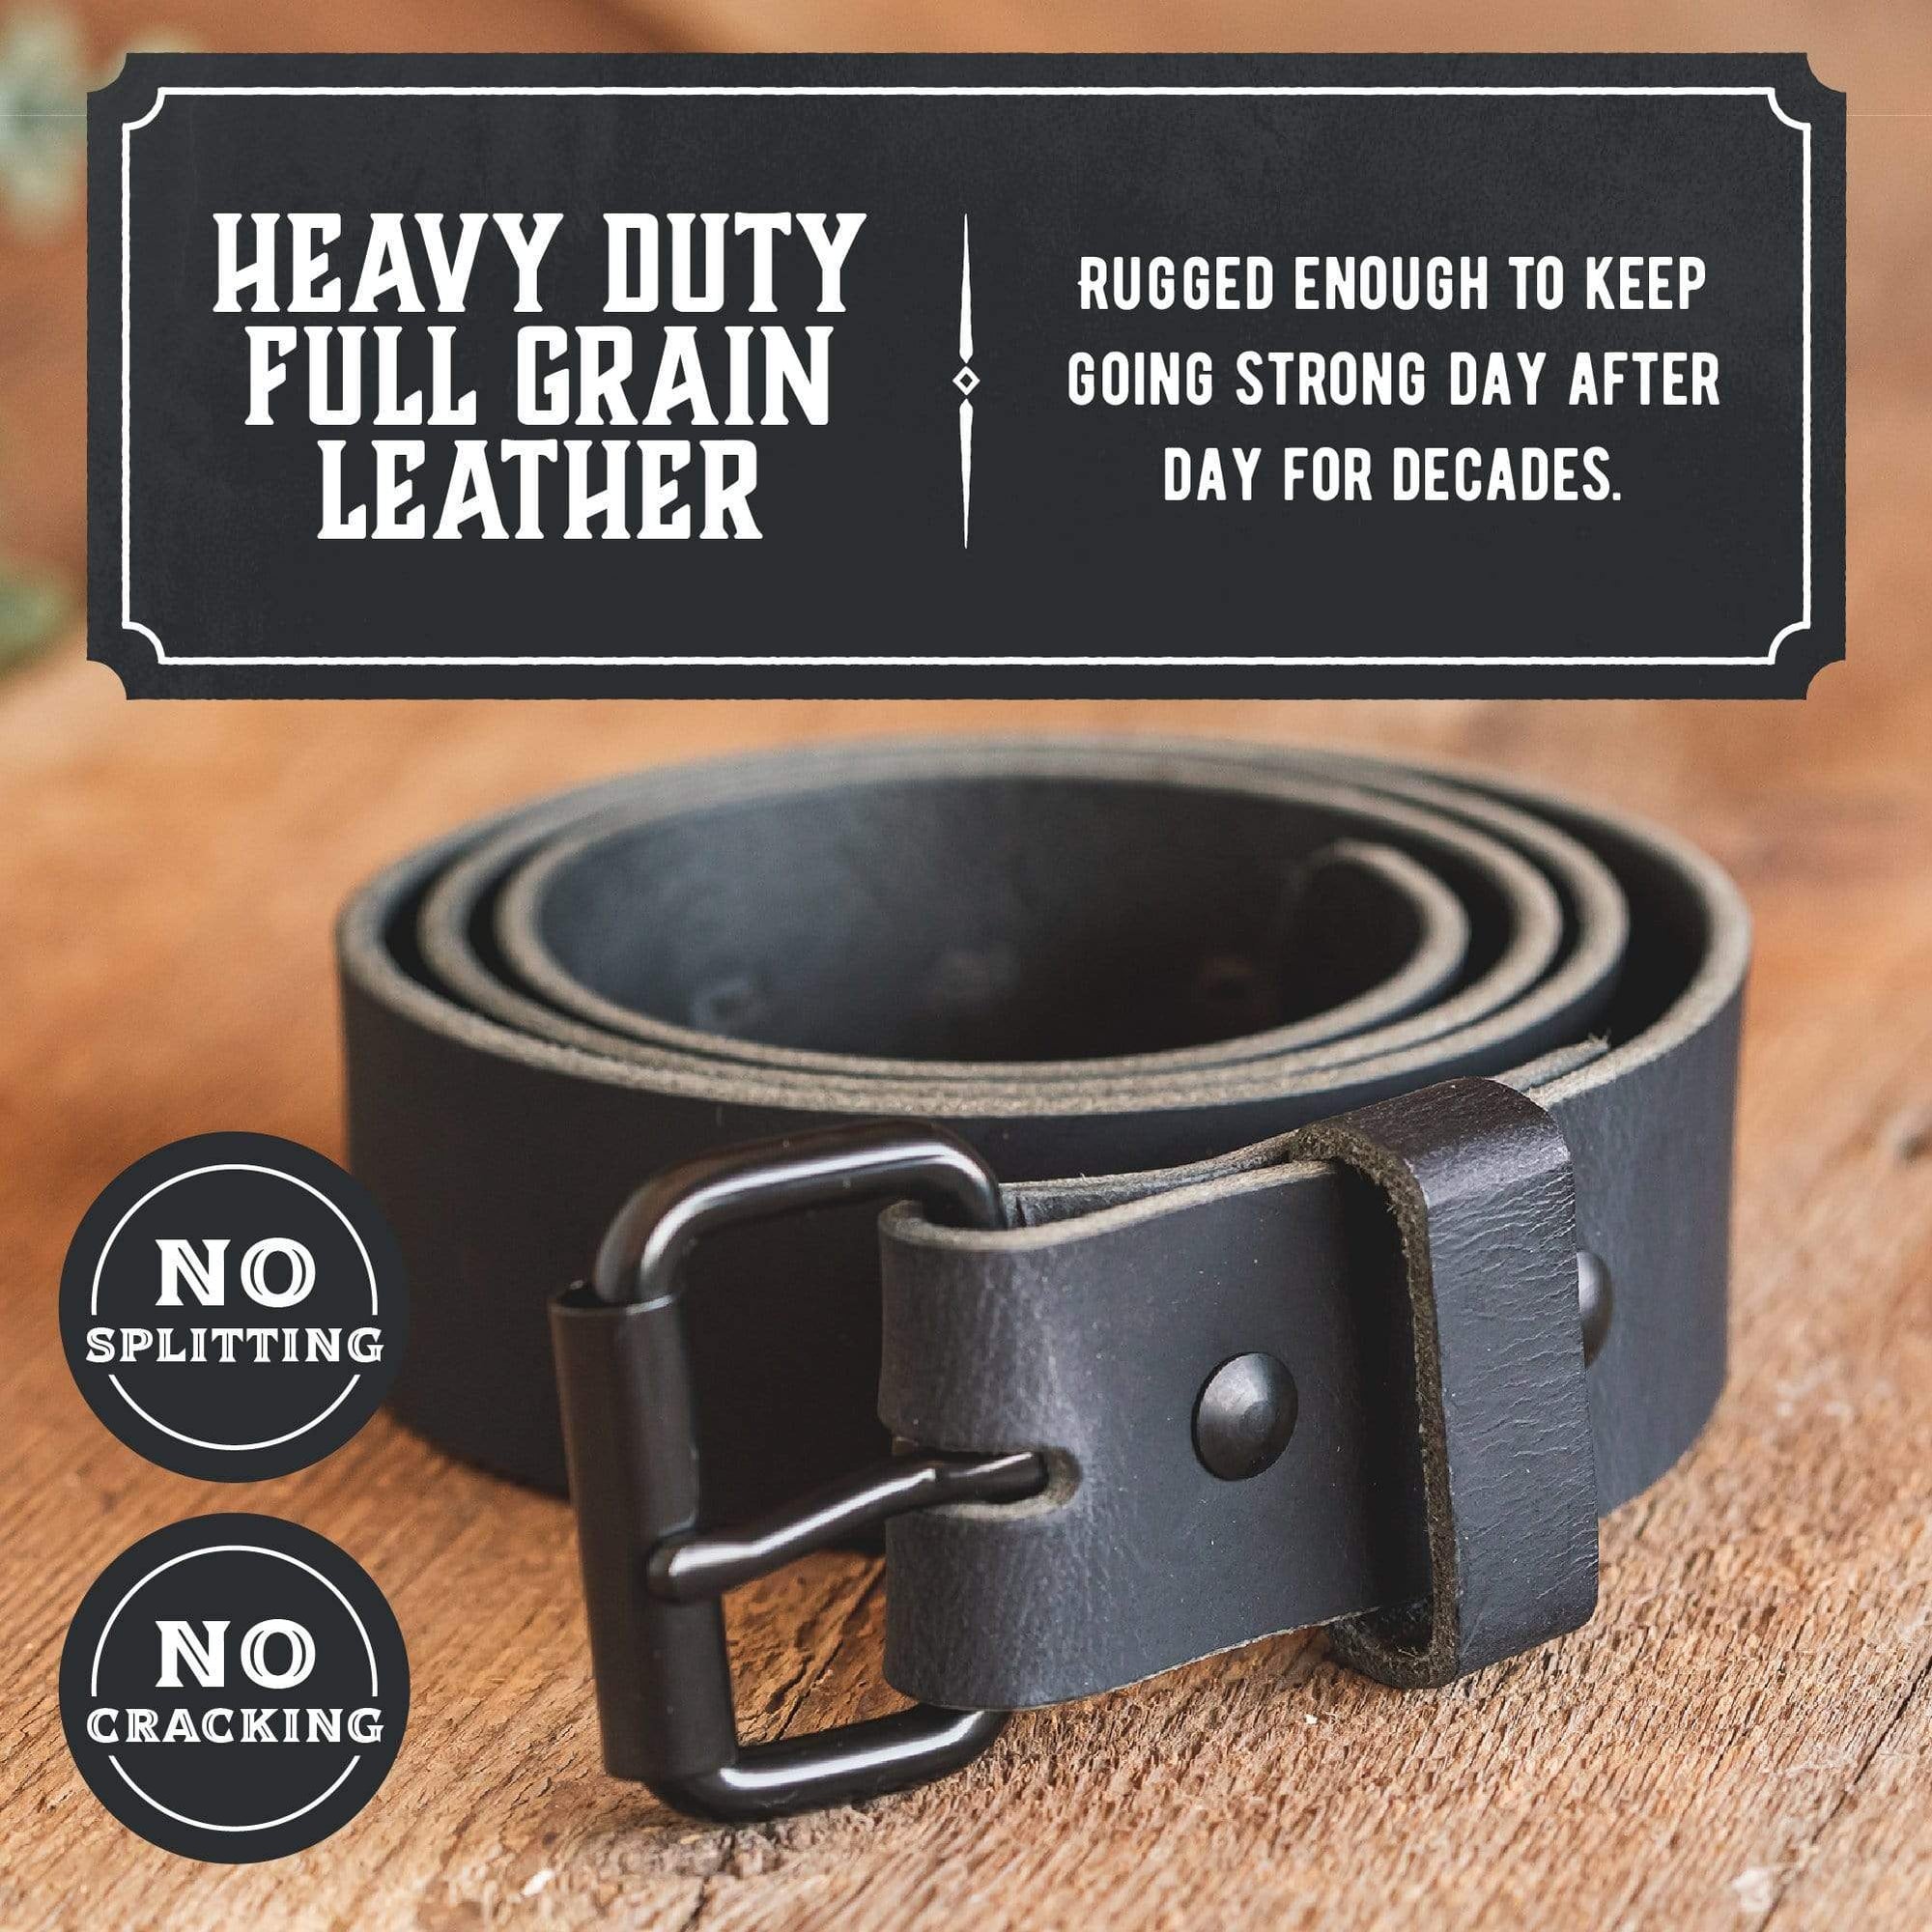 Men's Belts Full Grain Genuine Leather One Piece Casual Dress Belt